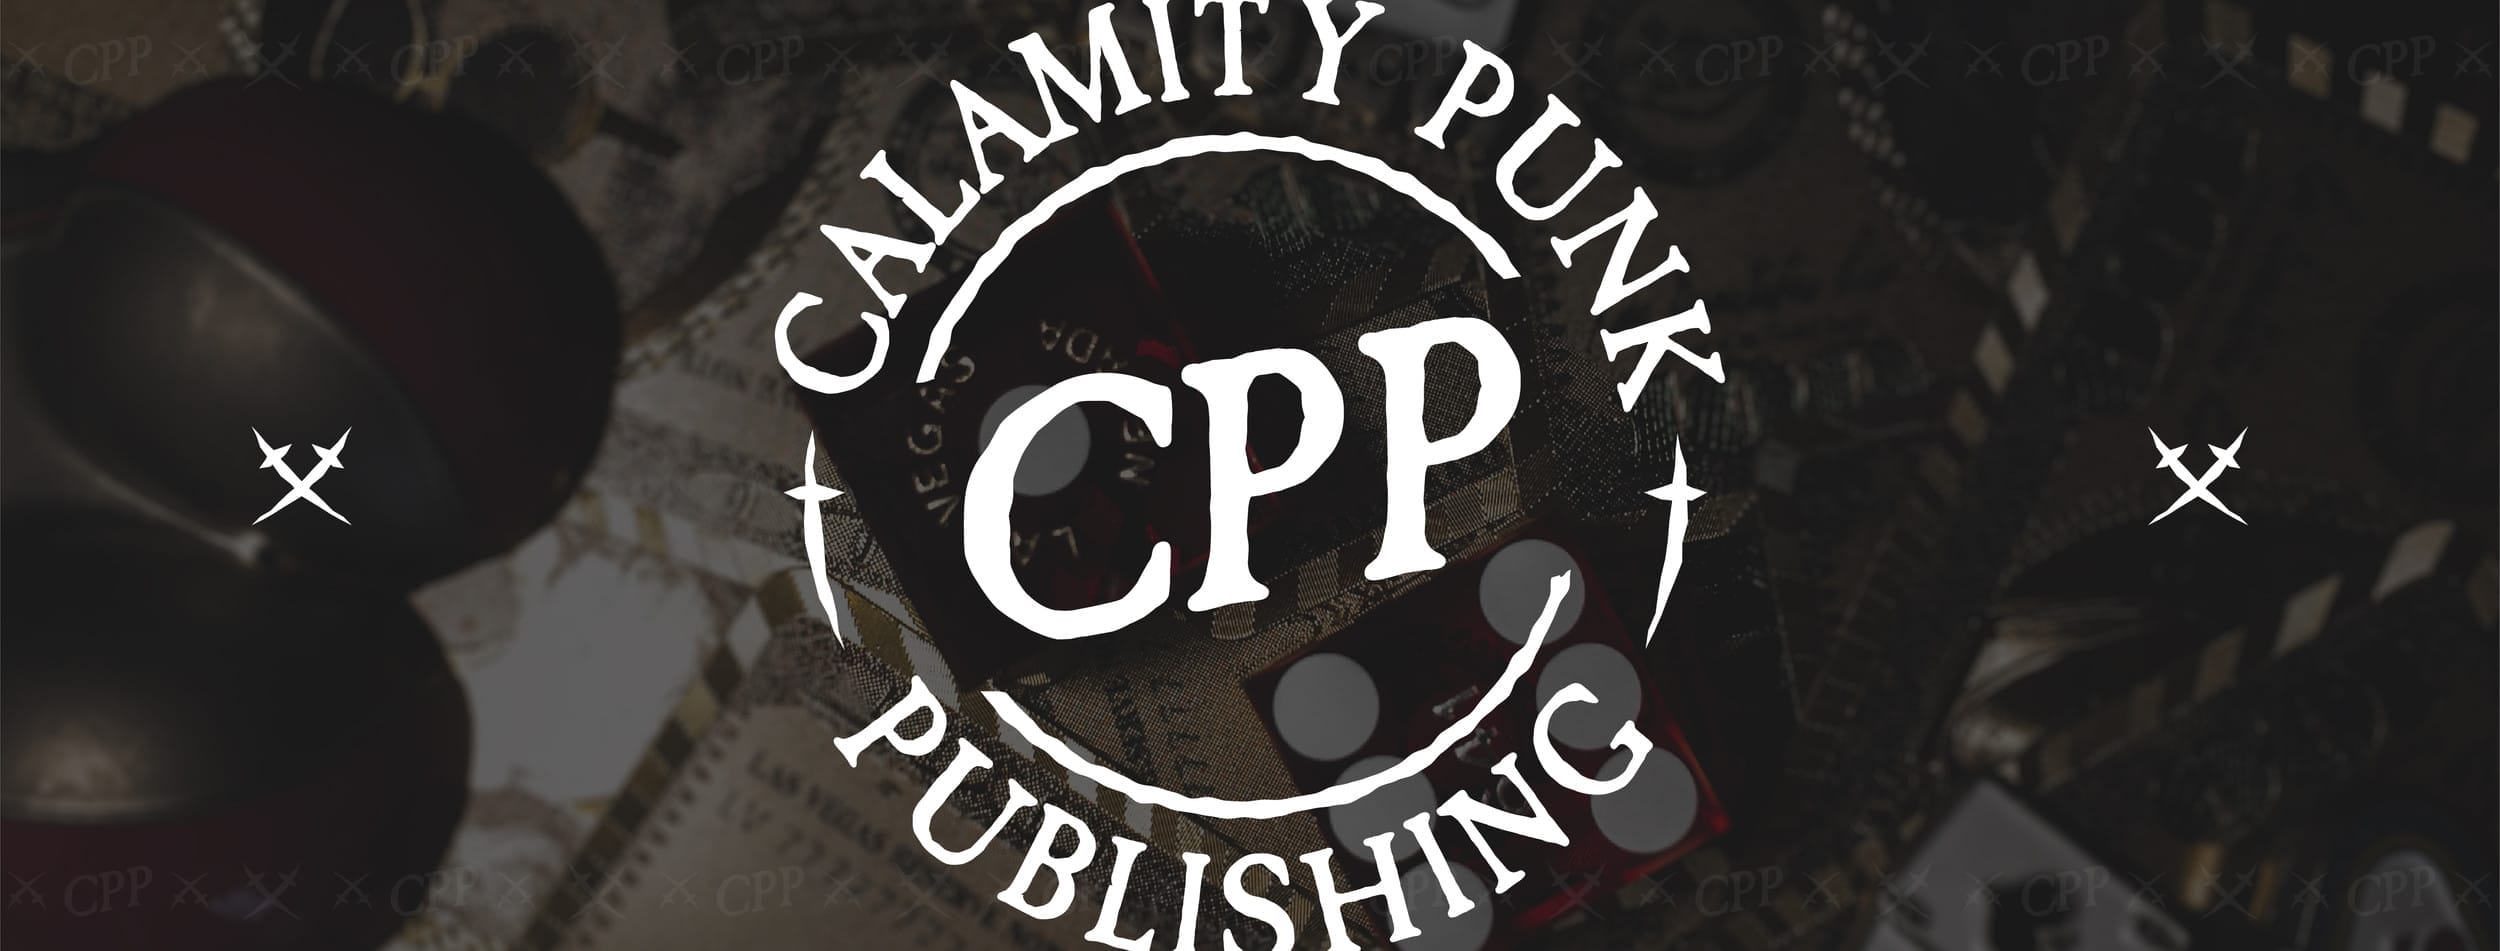 Calamity Punk Publishing